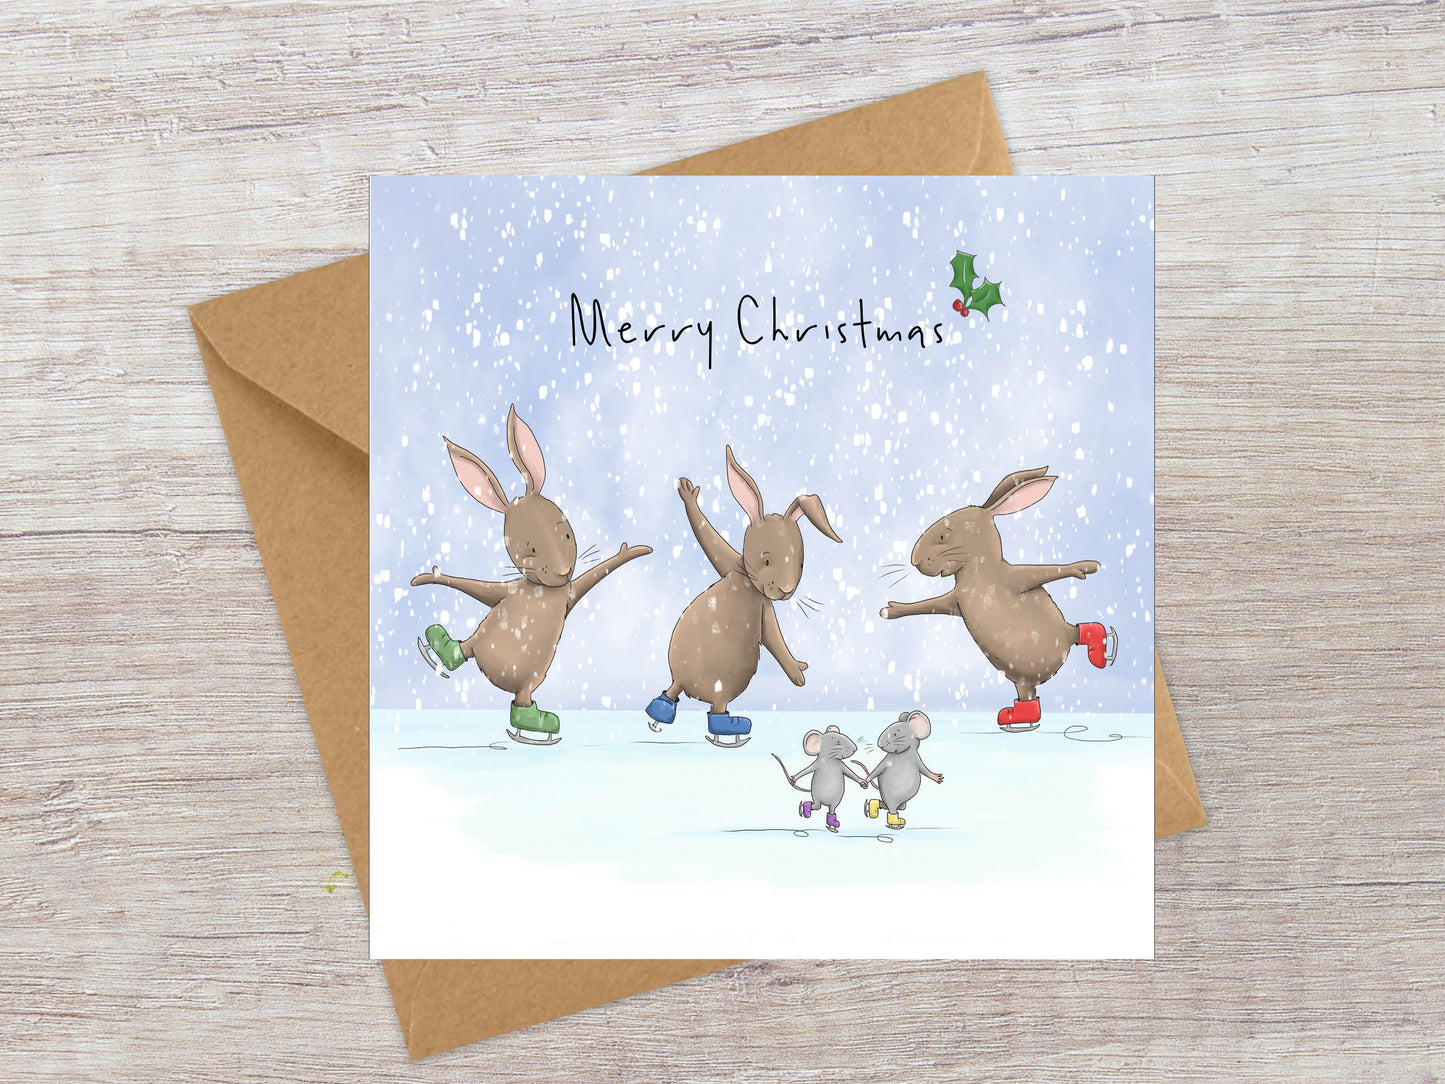 Cute Ice skating Rabbits and Mice Christmas card